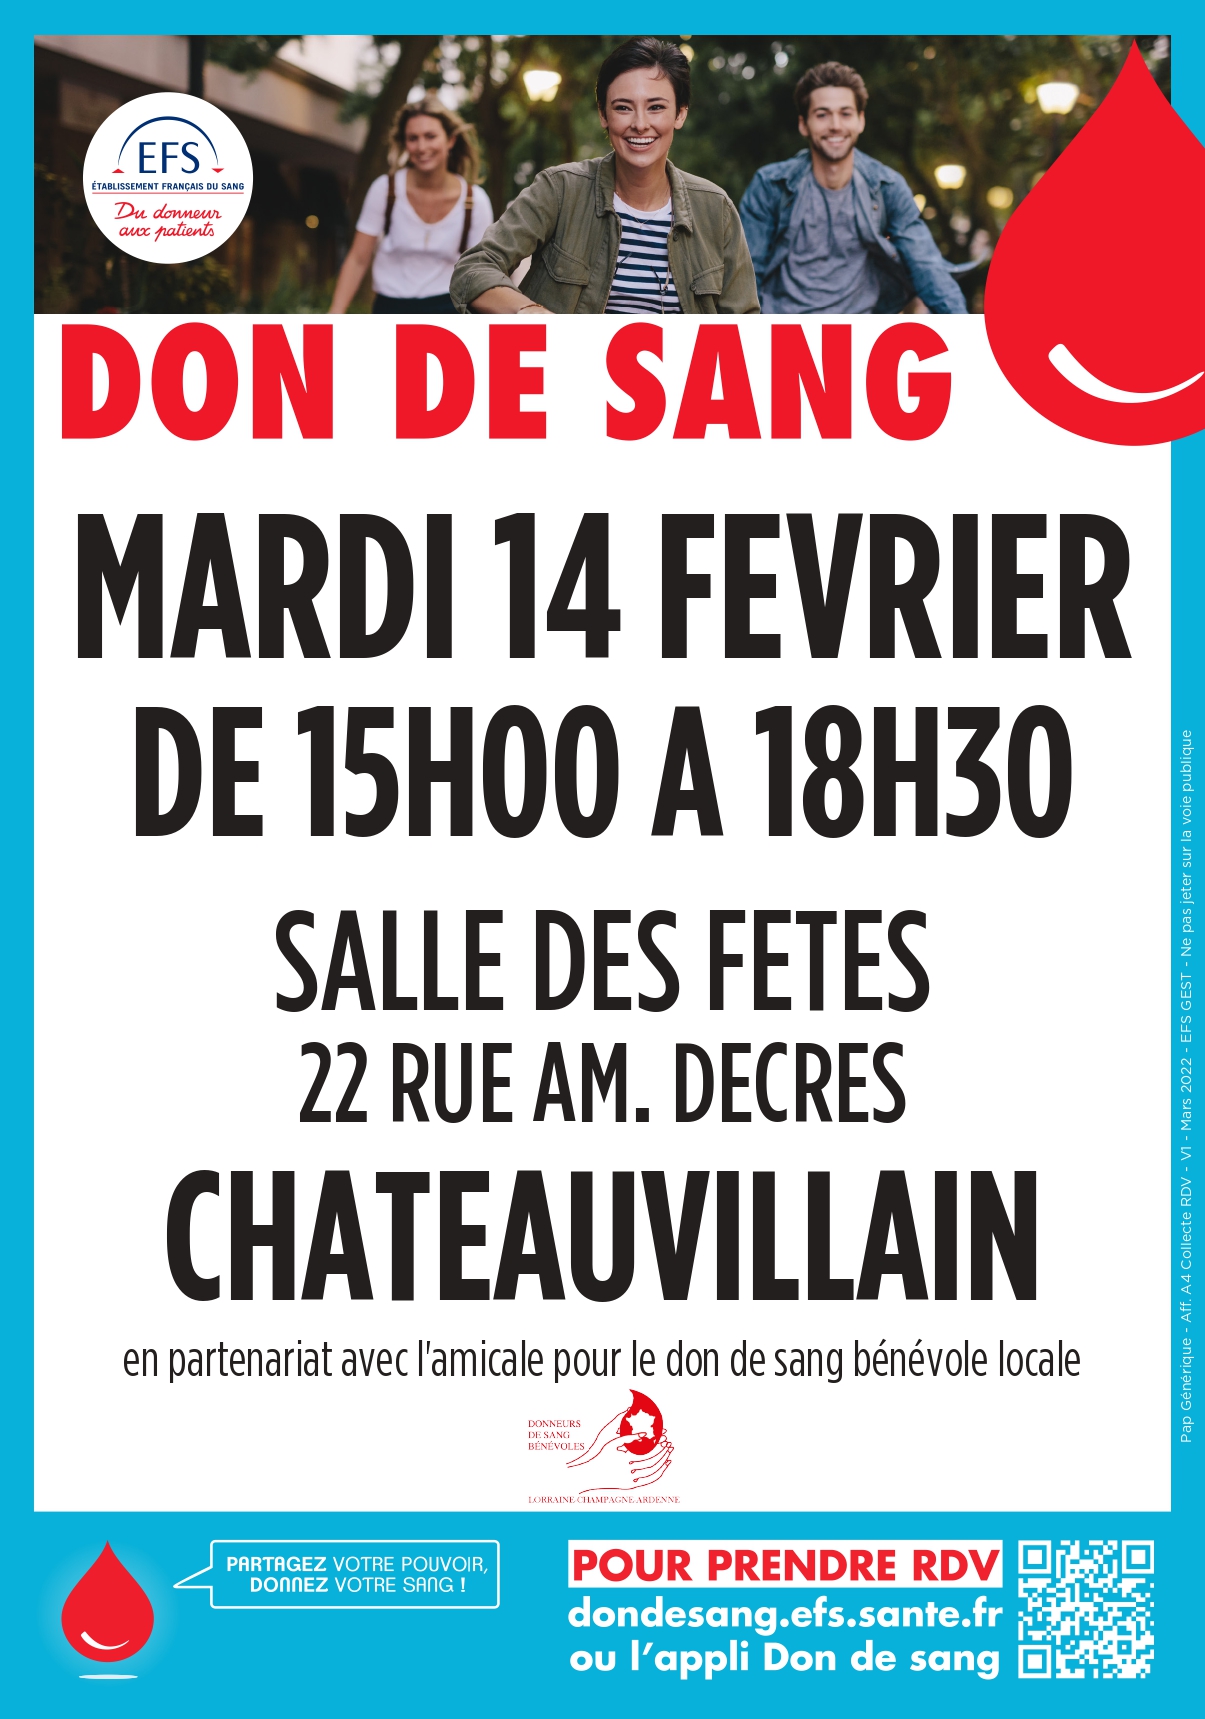 DON DE SANG – CHATEAUVILLAIN – MARDI 14 FÉVRIER 2023